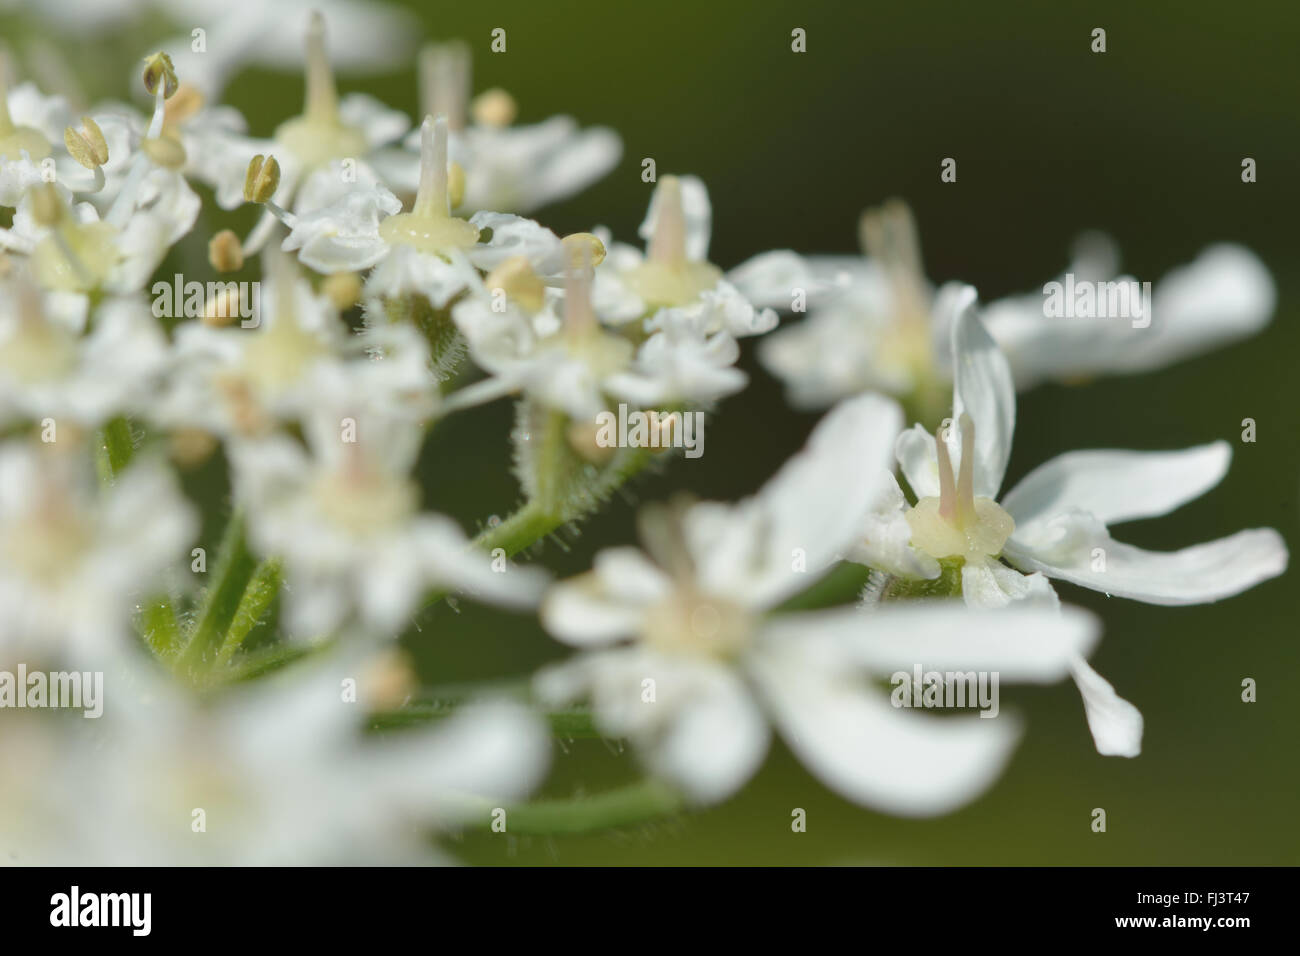 Hogweed (Heracleum sphondylium). Impianto di carota (Famiglia Apiaceae), ombrella di fiori bianchi dettaglio Foto Stock